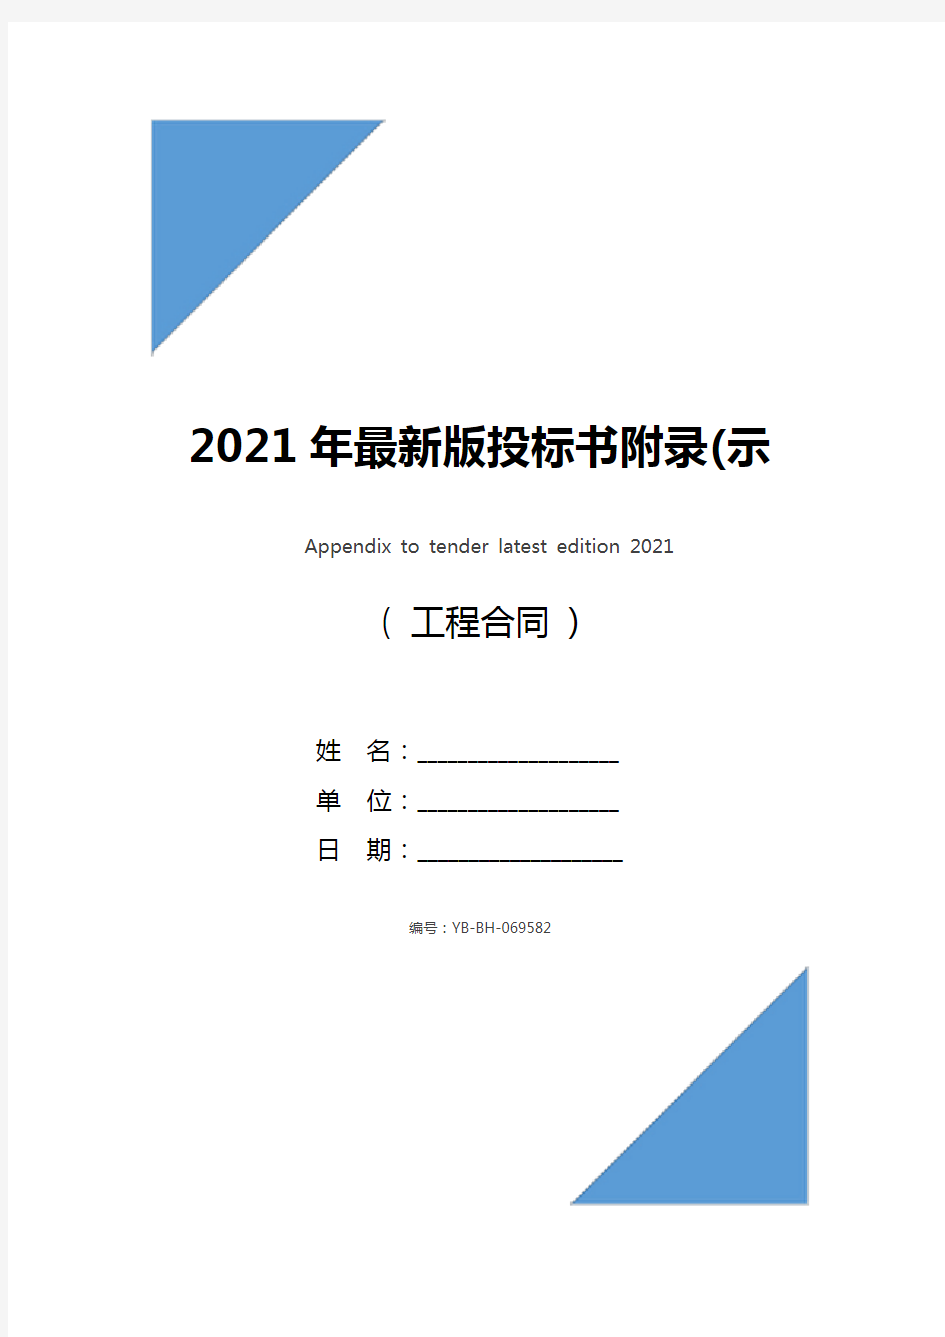 2021年最新版投标书附录(示范文本)